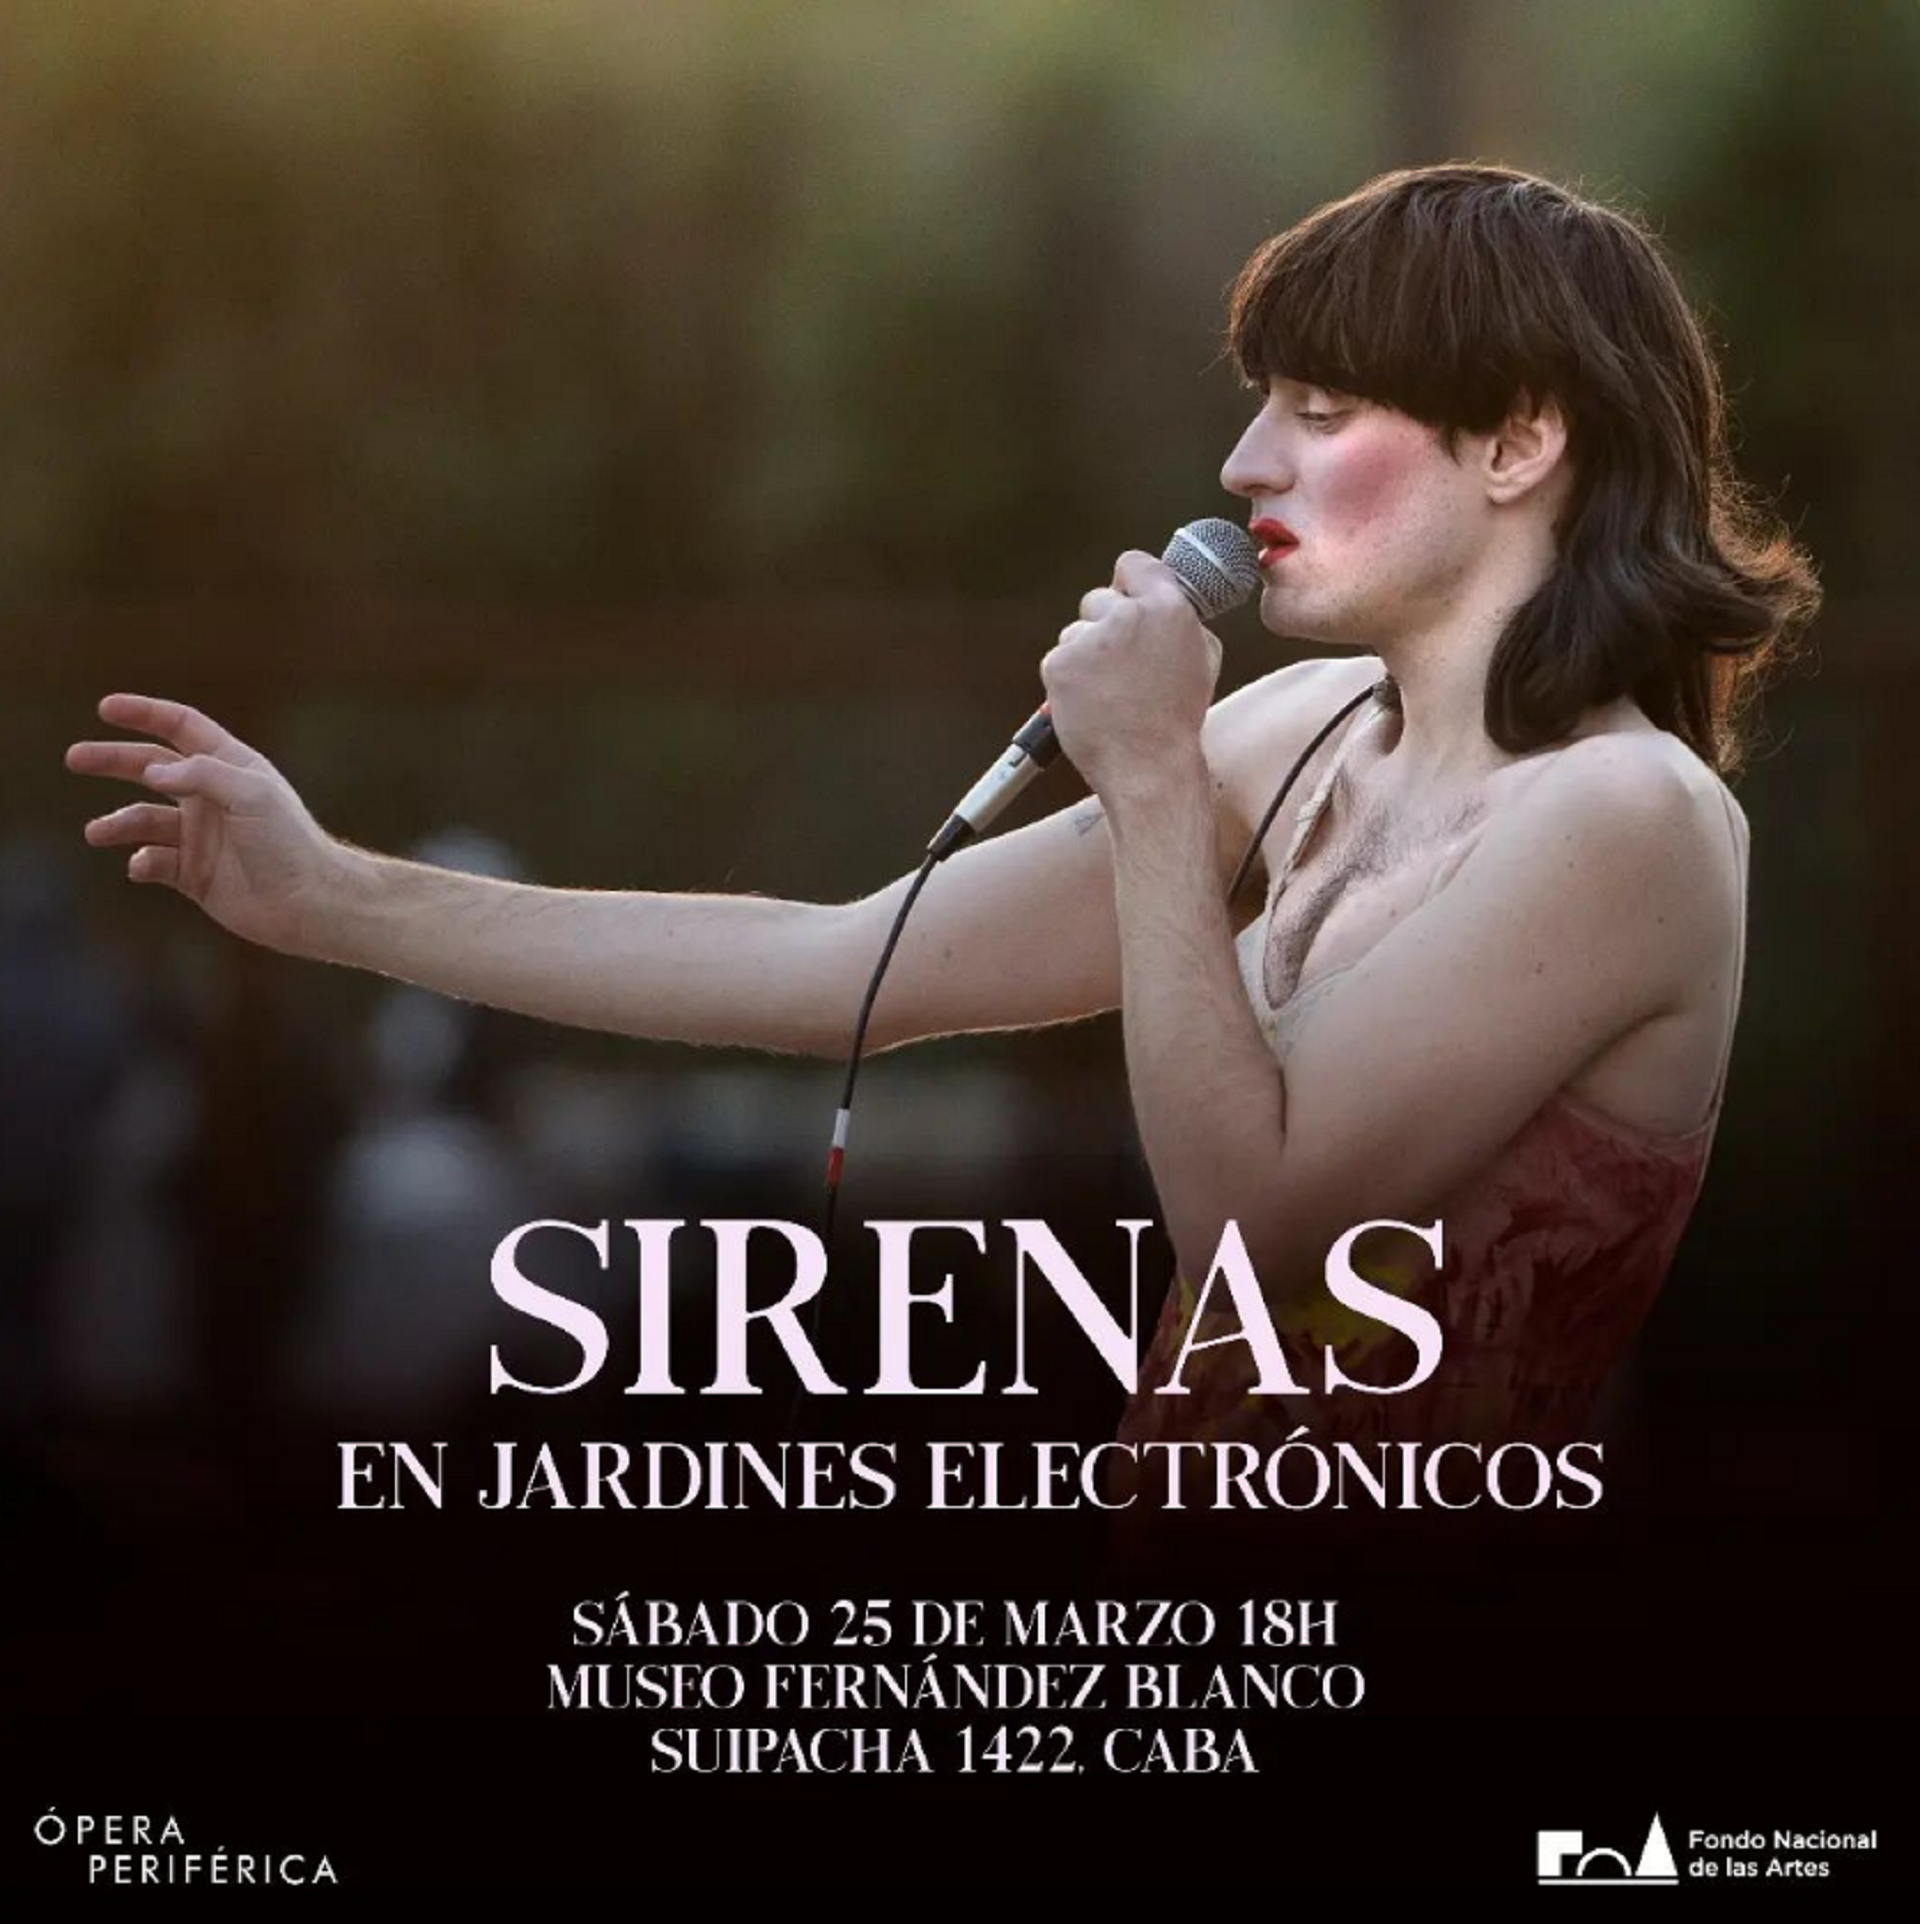 Flyer del evento “Sirenas en jardines electrónicos” de Ópera Periférica en el Museo Fernández Blanco (Crédito: Instagram Ópera Periférica)